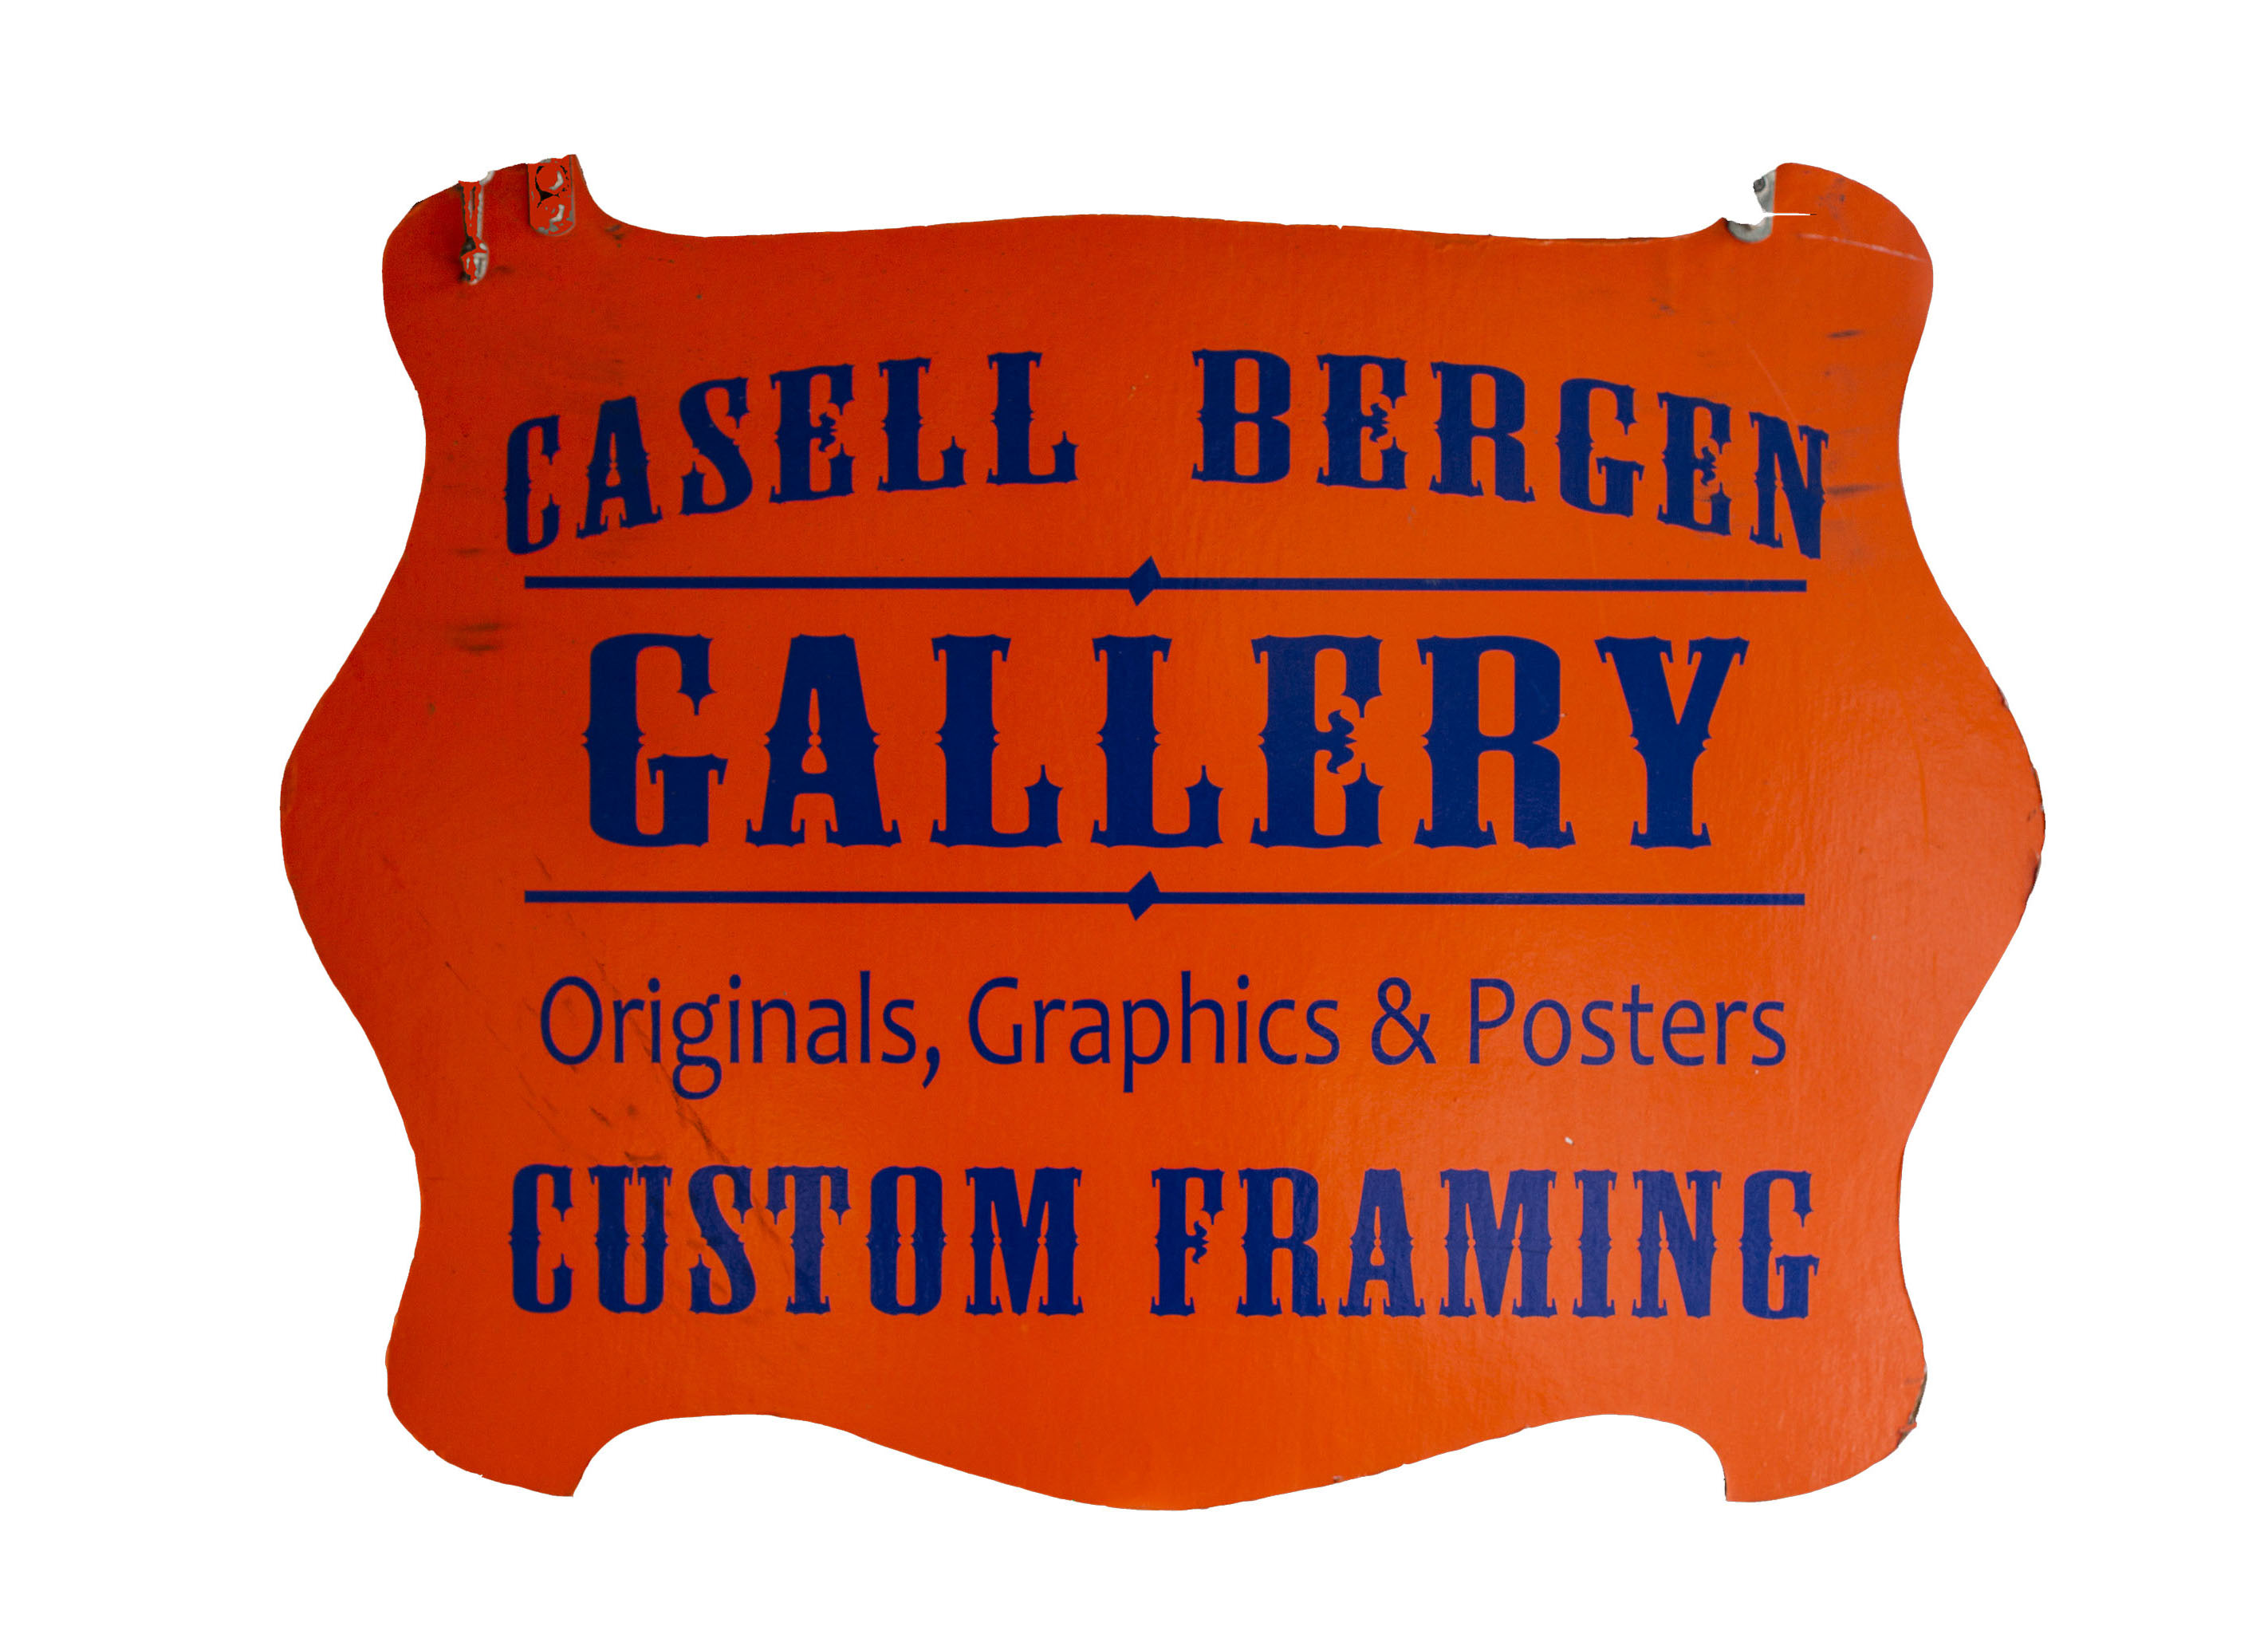 Casell – Bergen Gallery